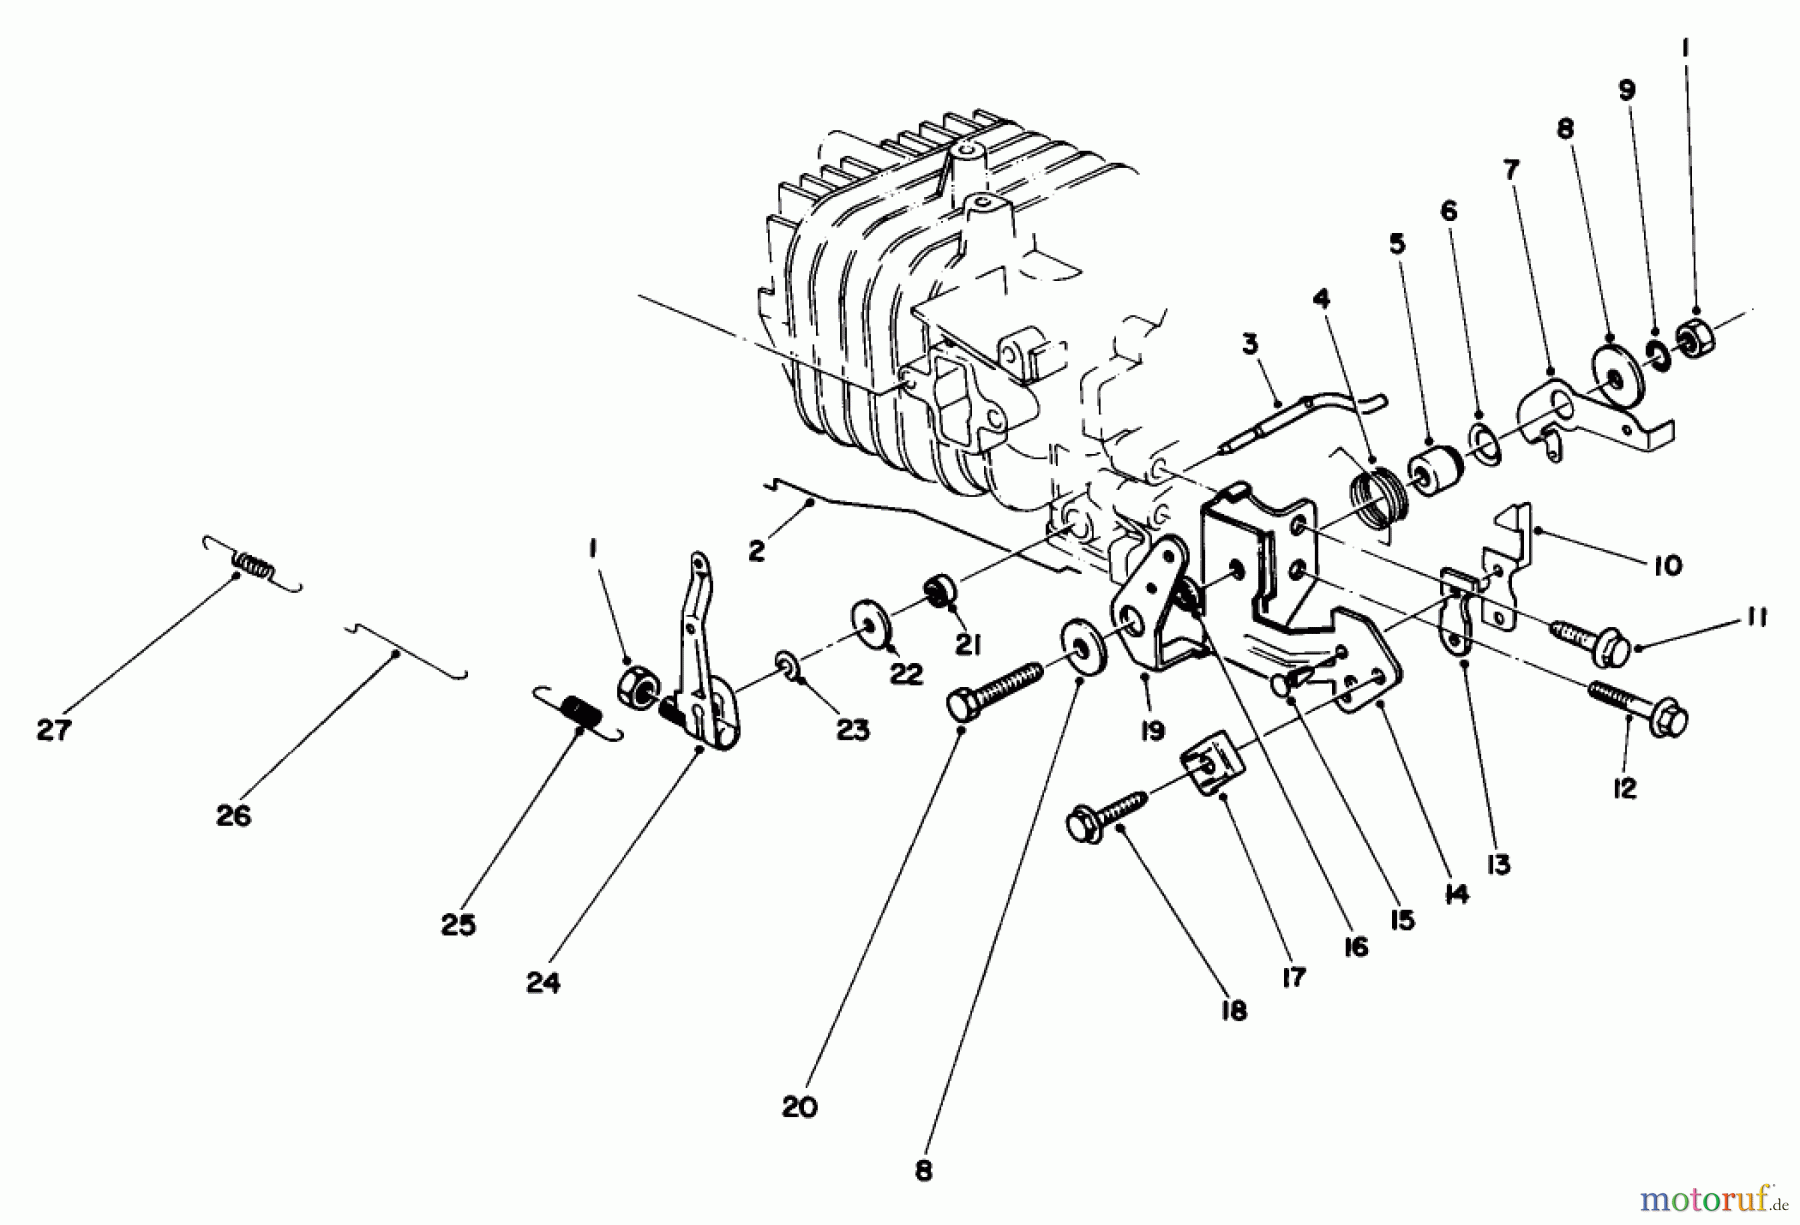  Toro Neu Mowers, Walk-Behind Seite 2 22035 - Toro Lawnmower, 1987 (7000001-7999999) ENGINE ASSEMBLY MODEL NO. 47PG6 #4